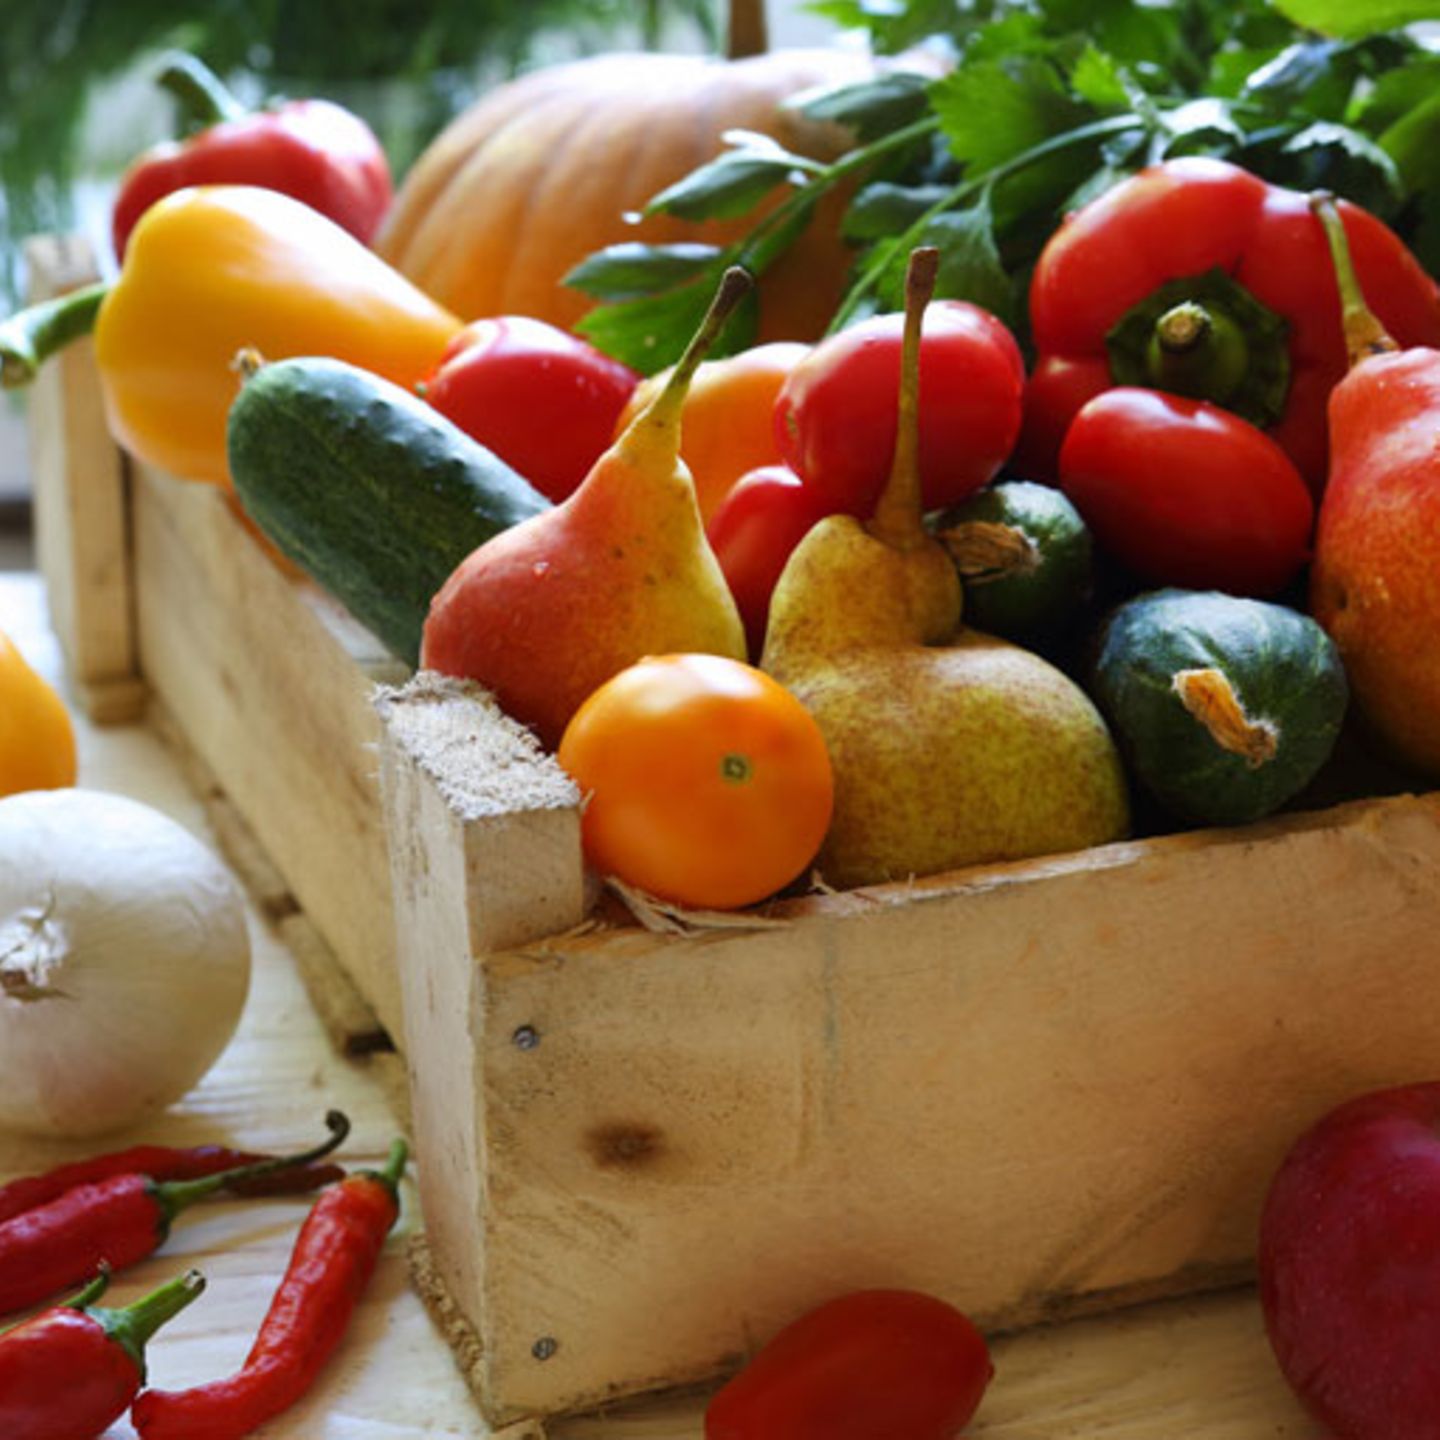 3. Obst und Gemüse sind gesund